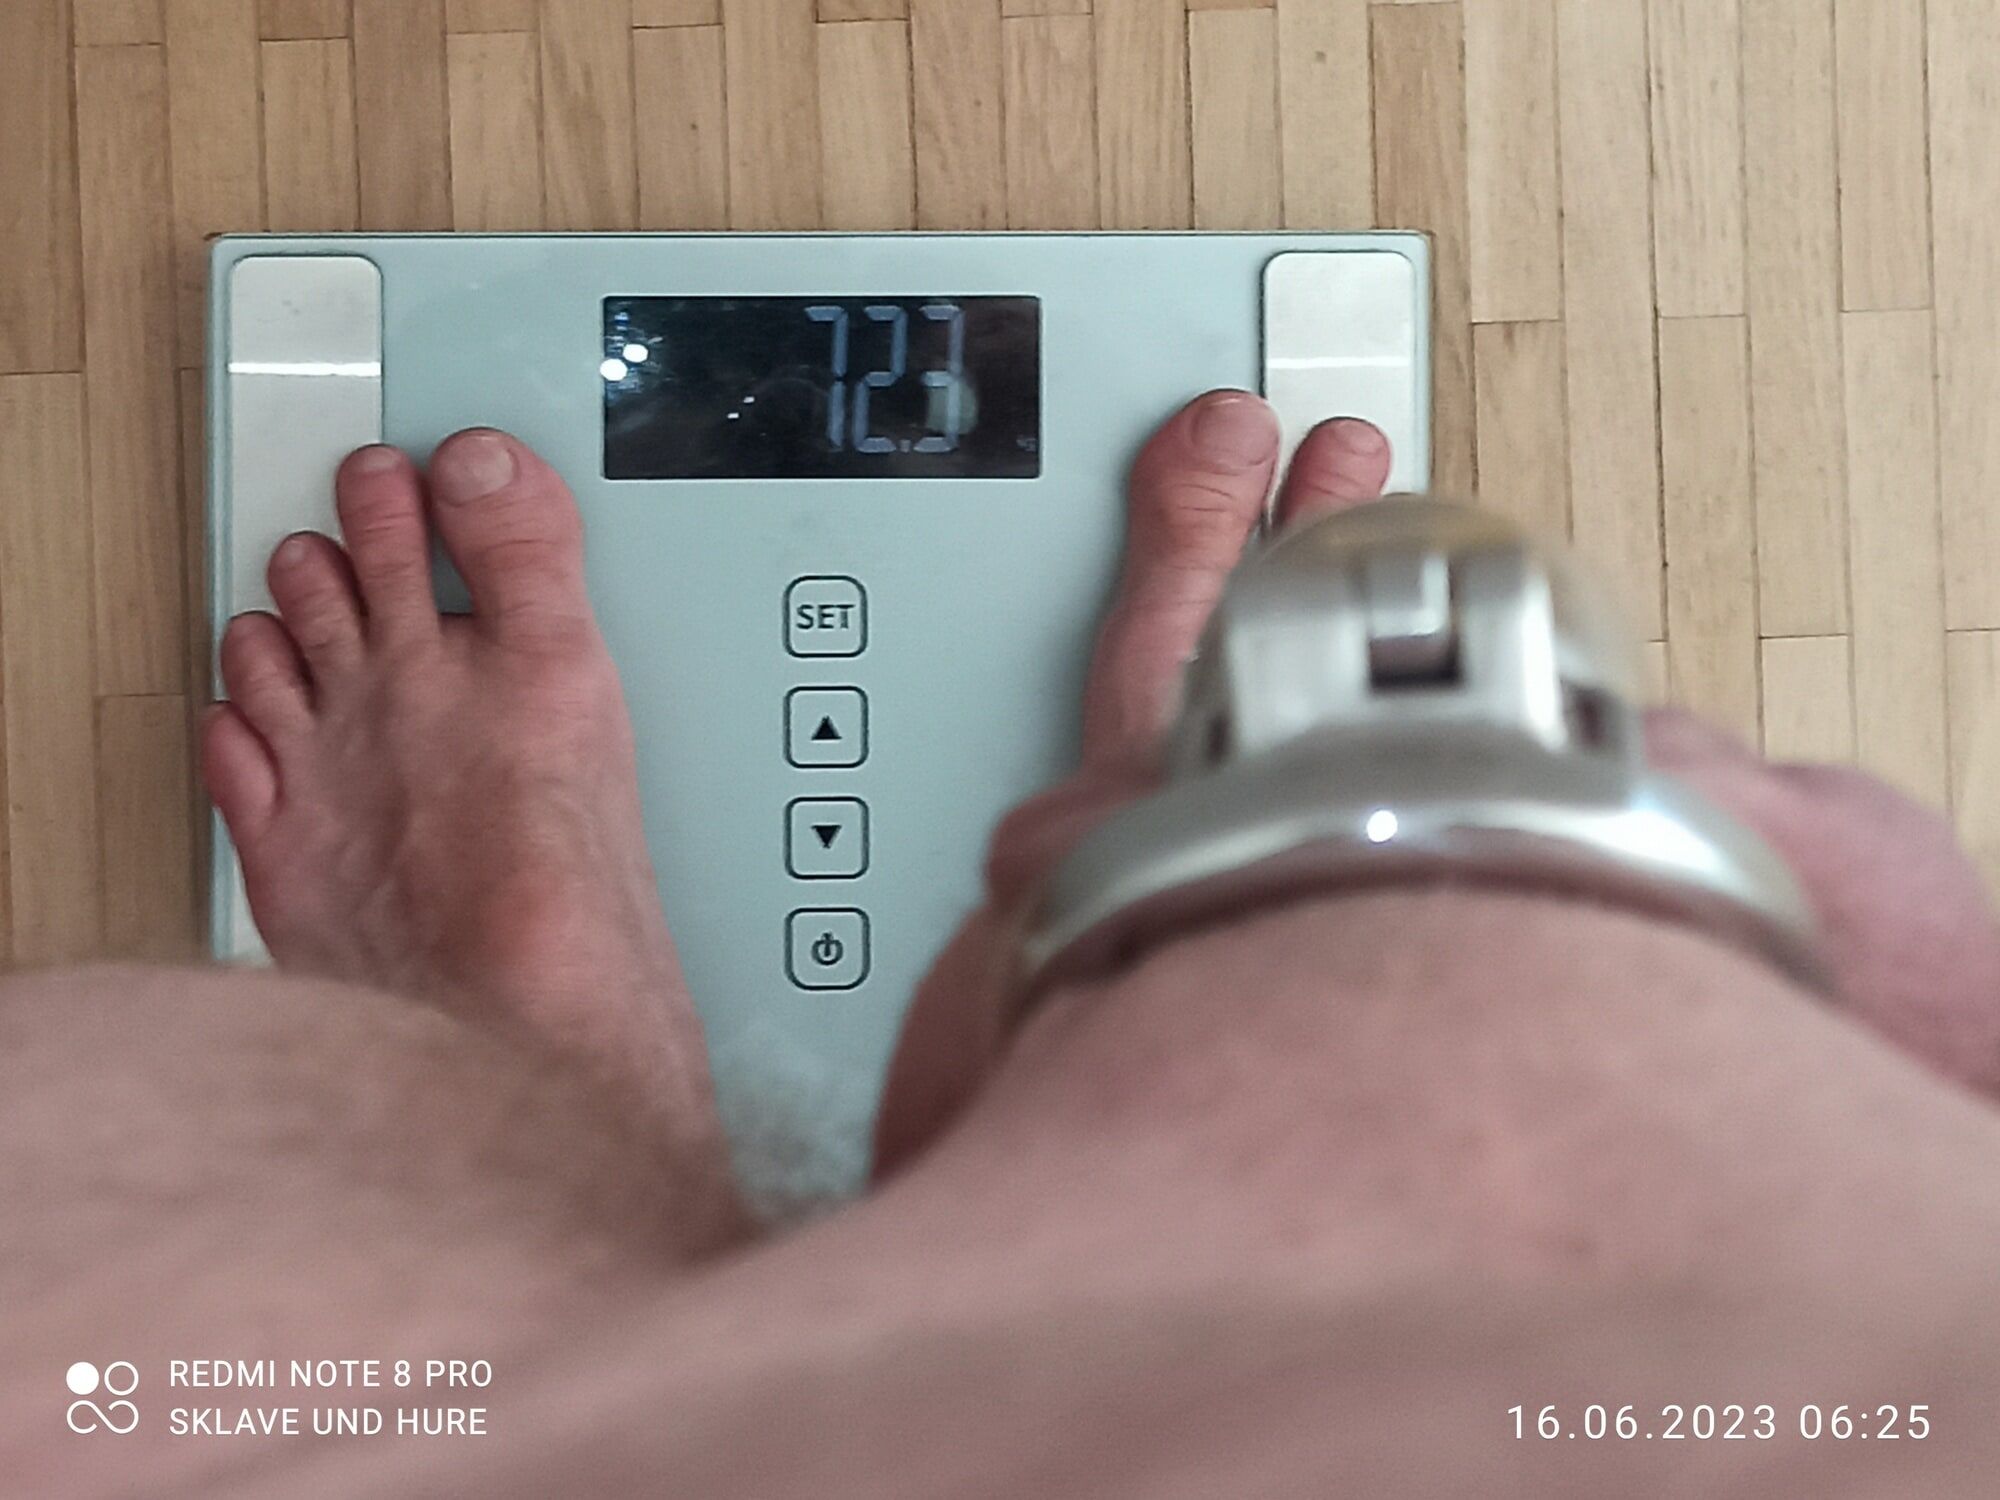 weighing , cagecheck, 16.06.2023 #16